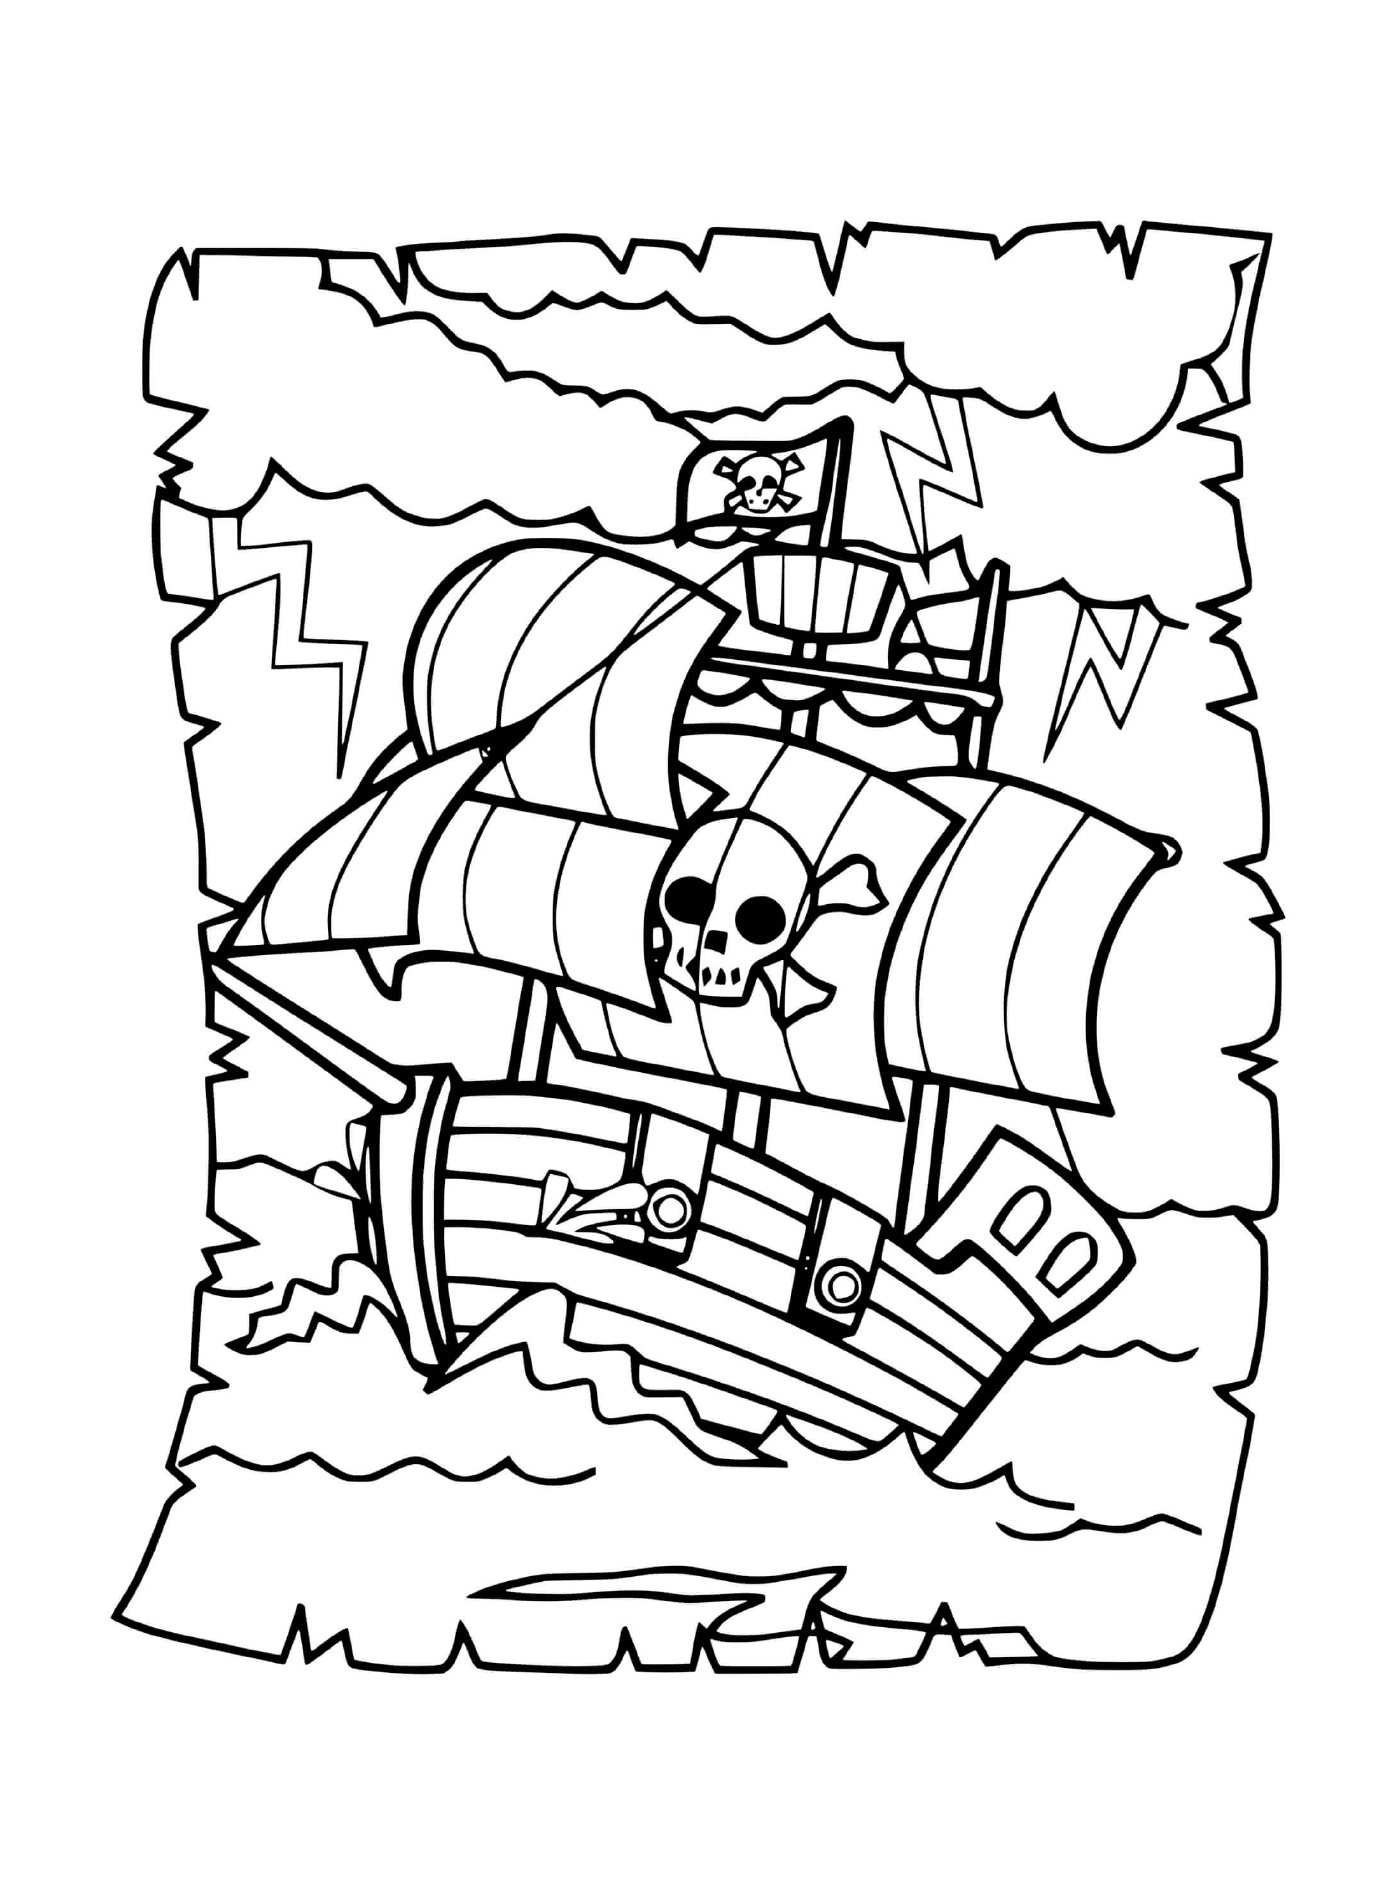   Pirate, bateau traversant vagues intenses 